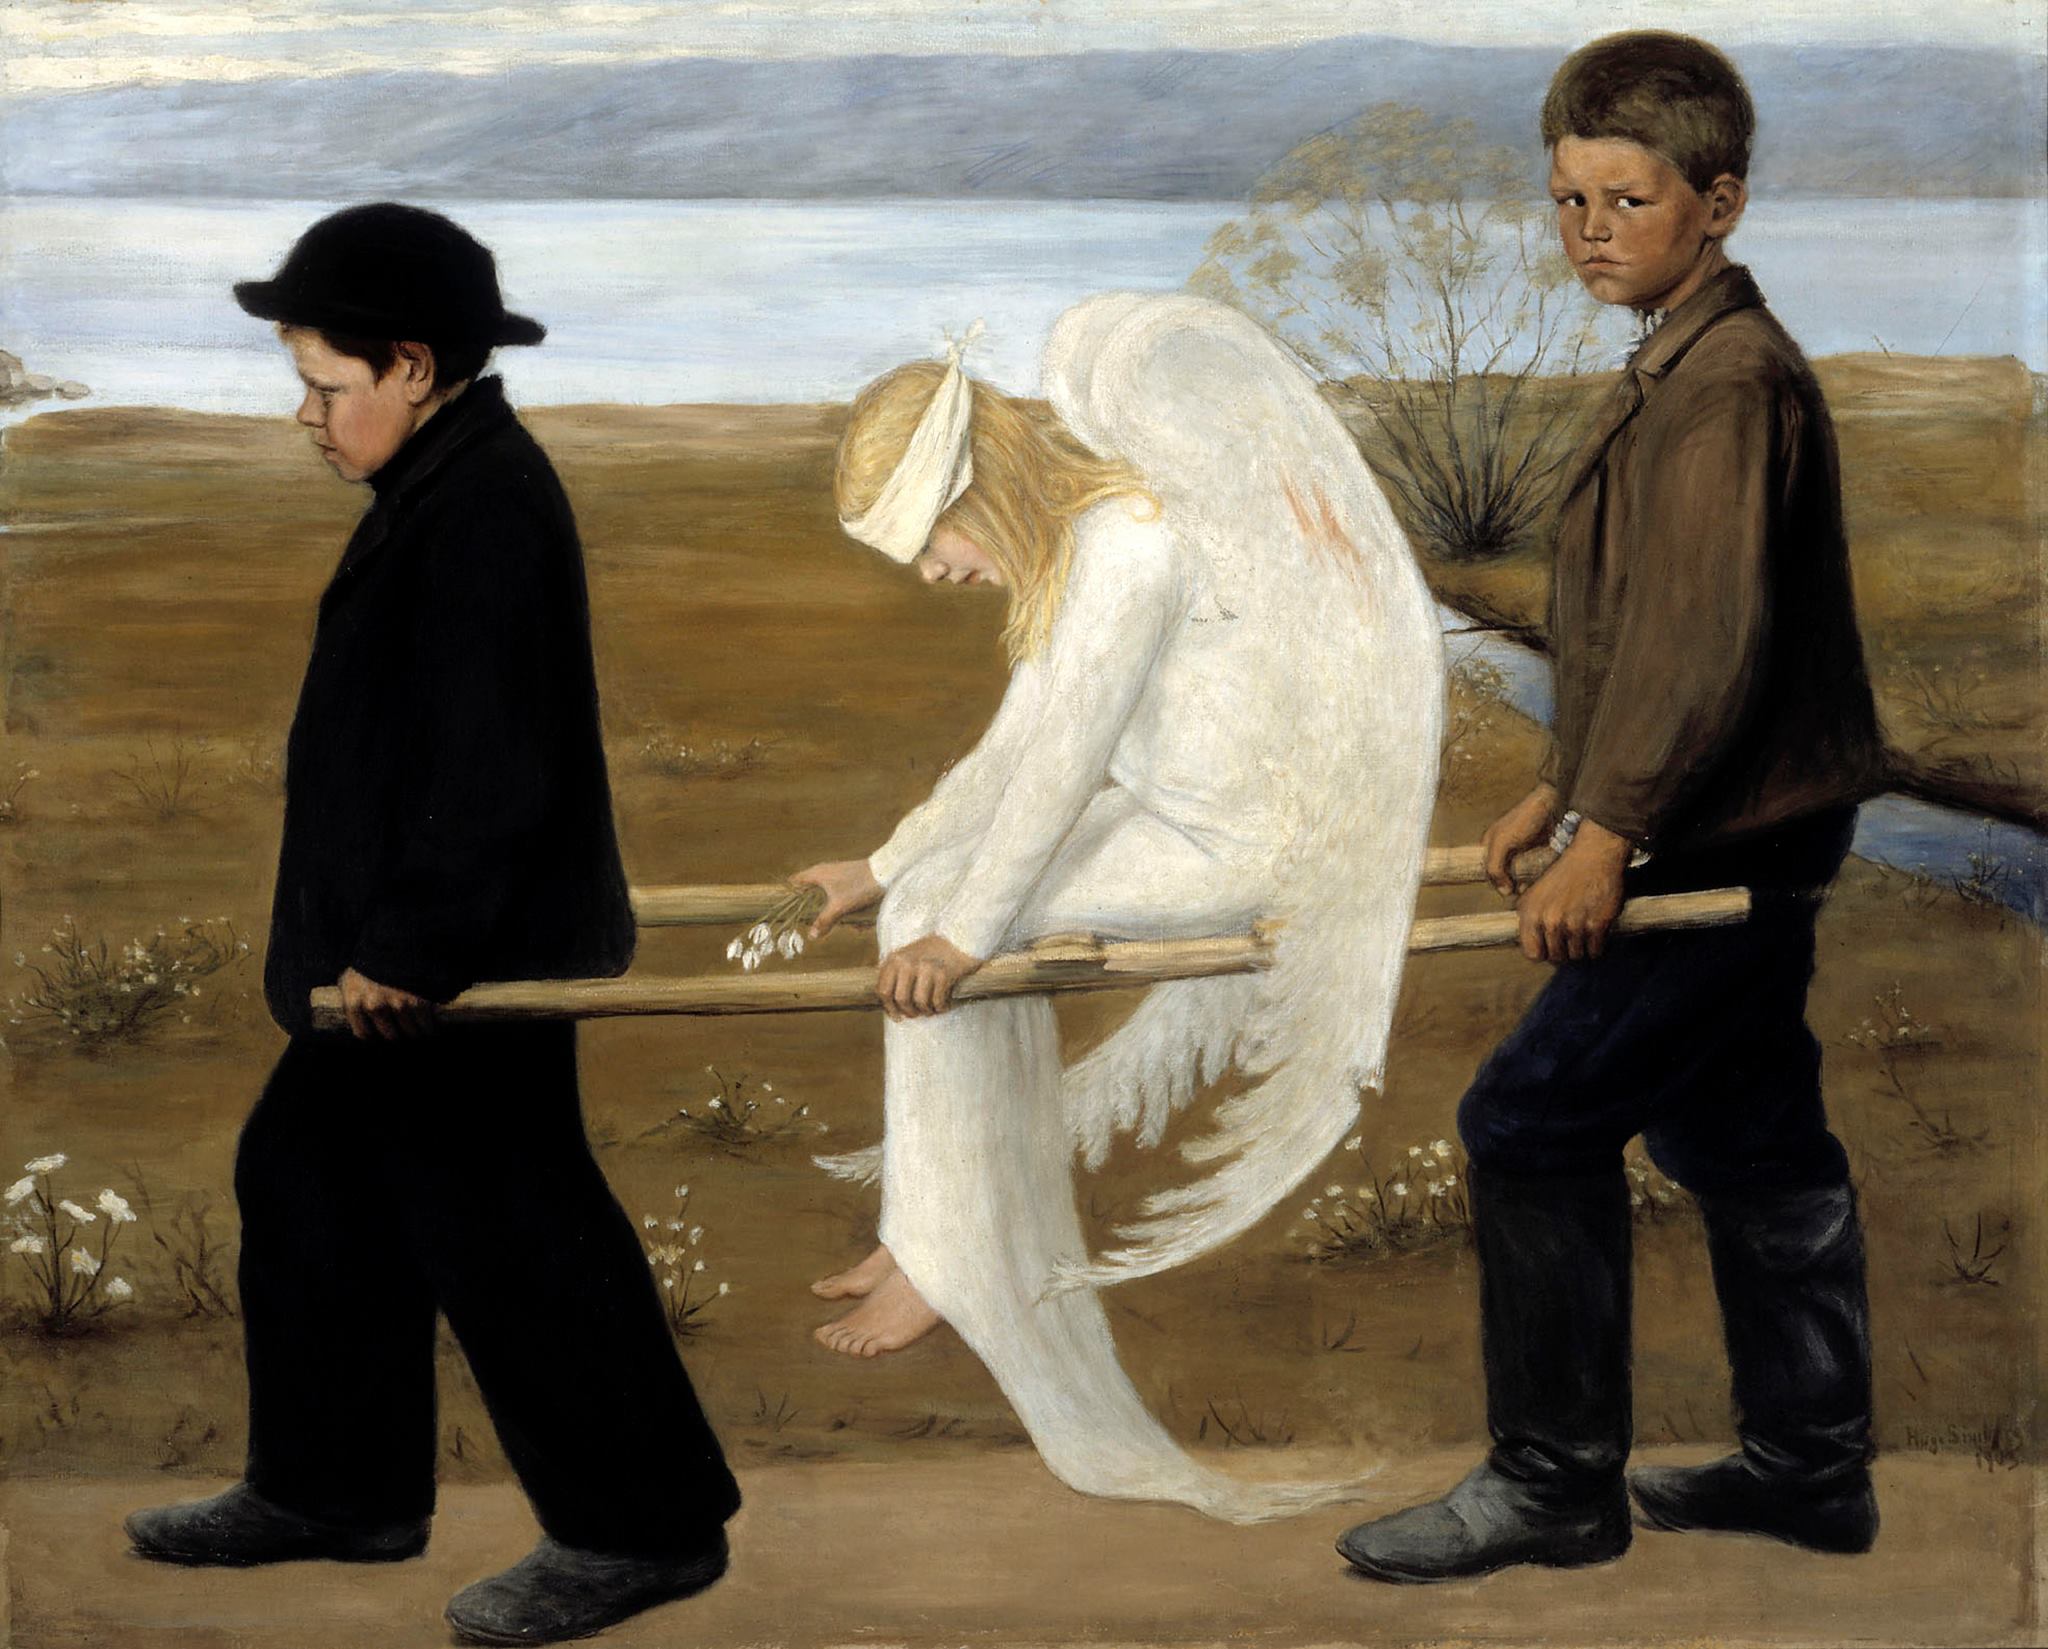 芬蘭象徵主義畫家Hugo Simberg的作品《The Wounded Angel》。